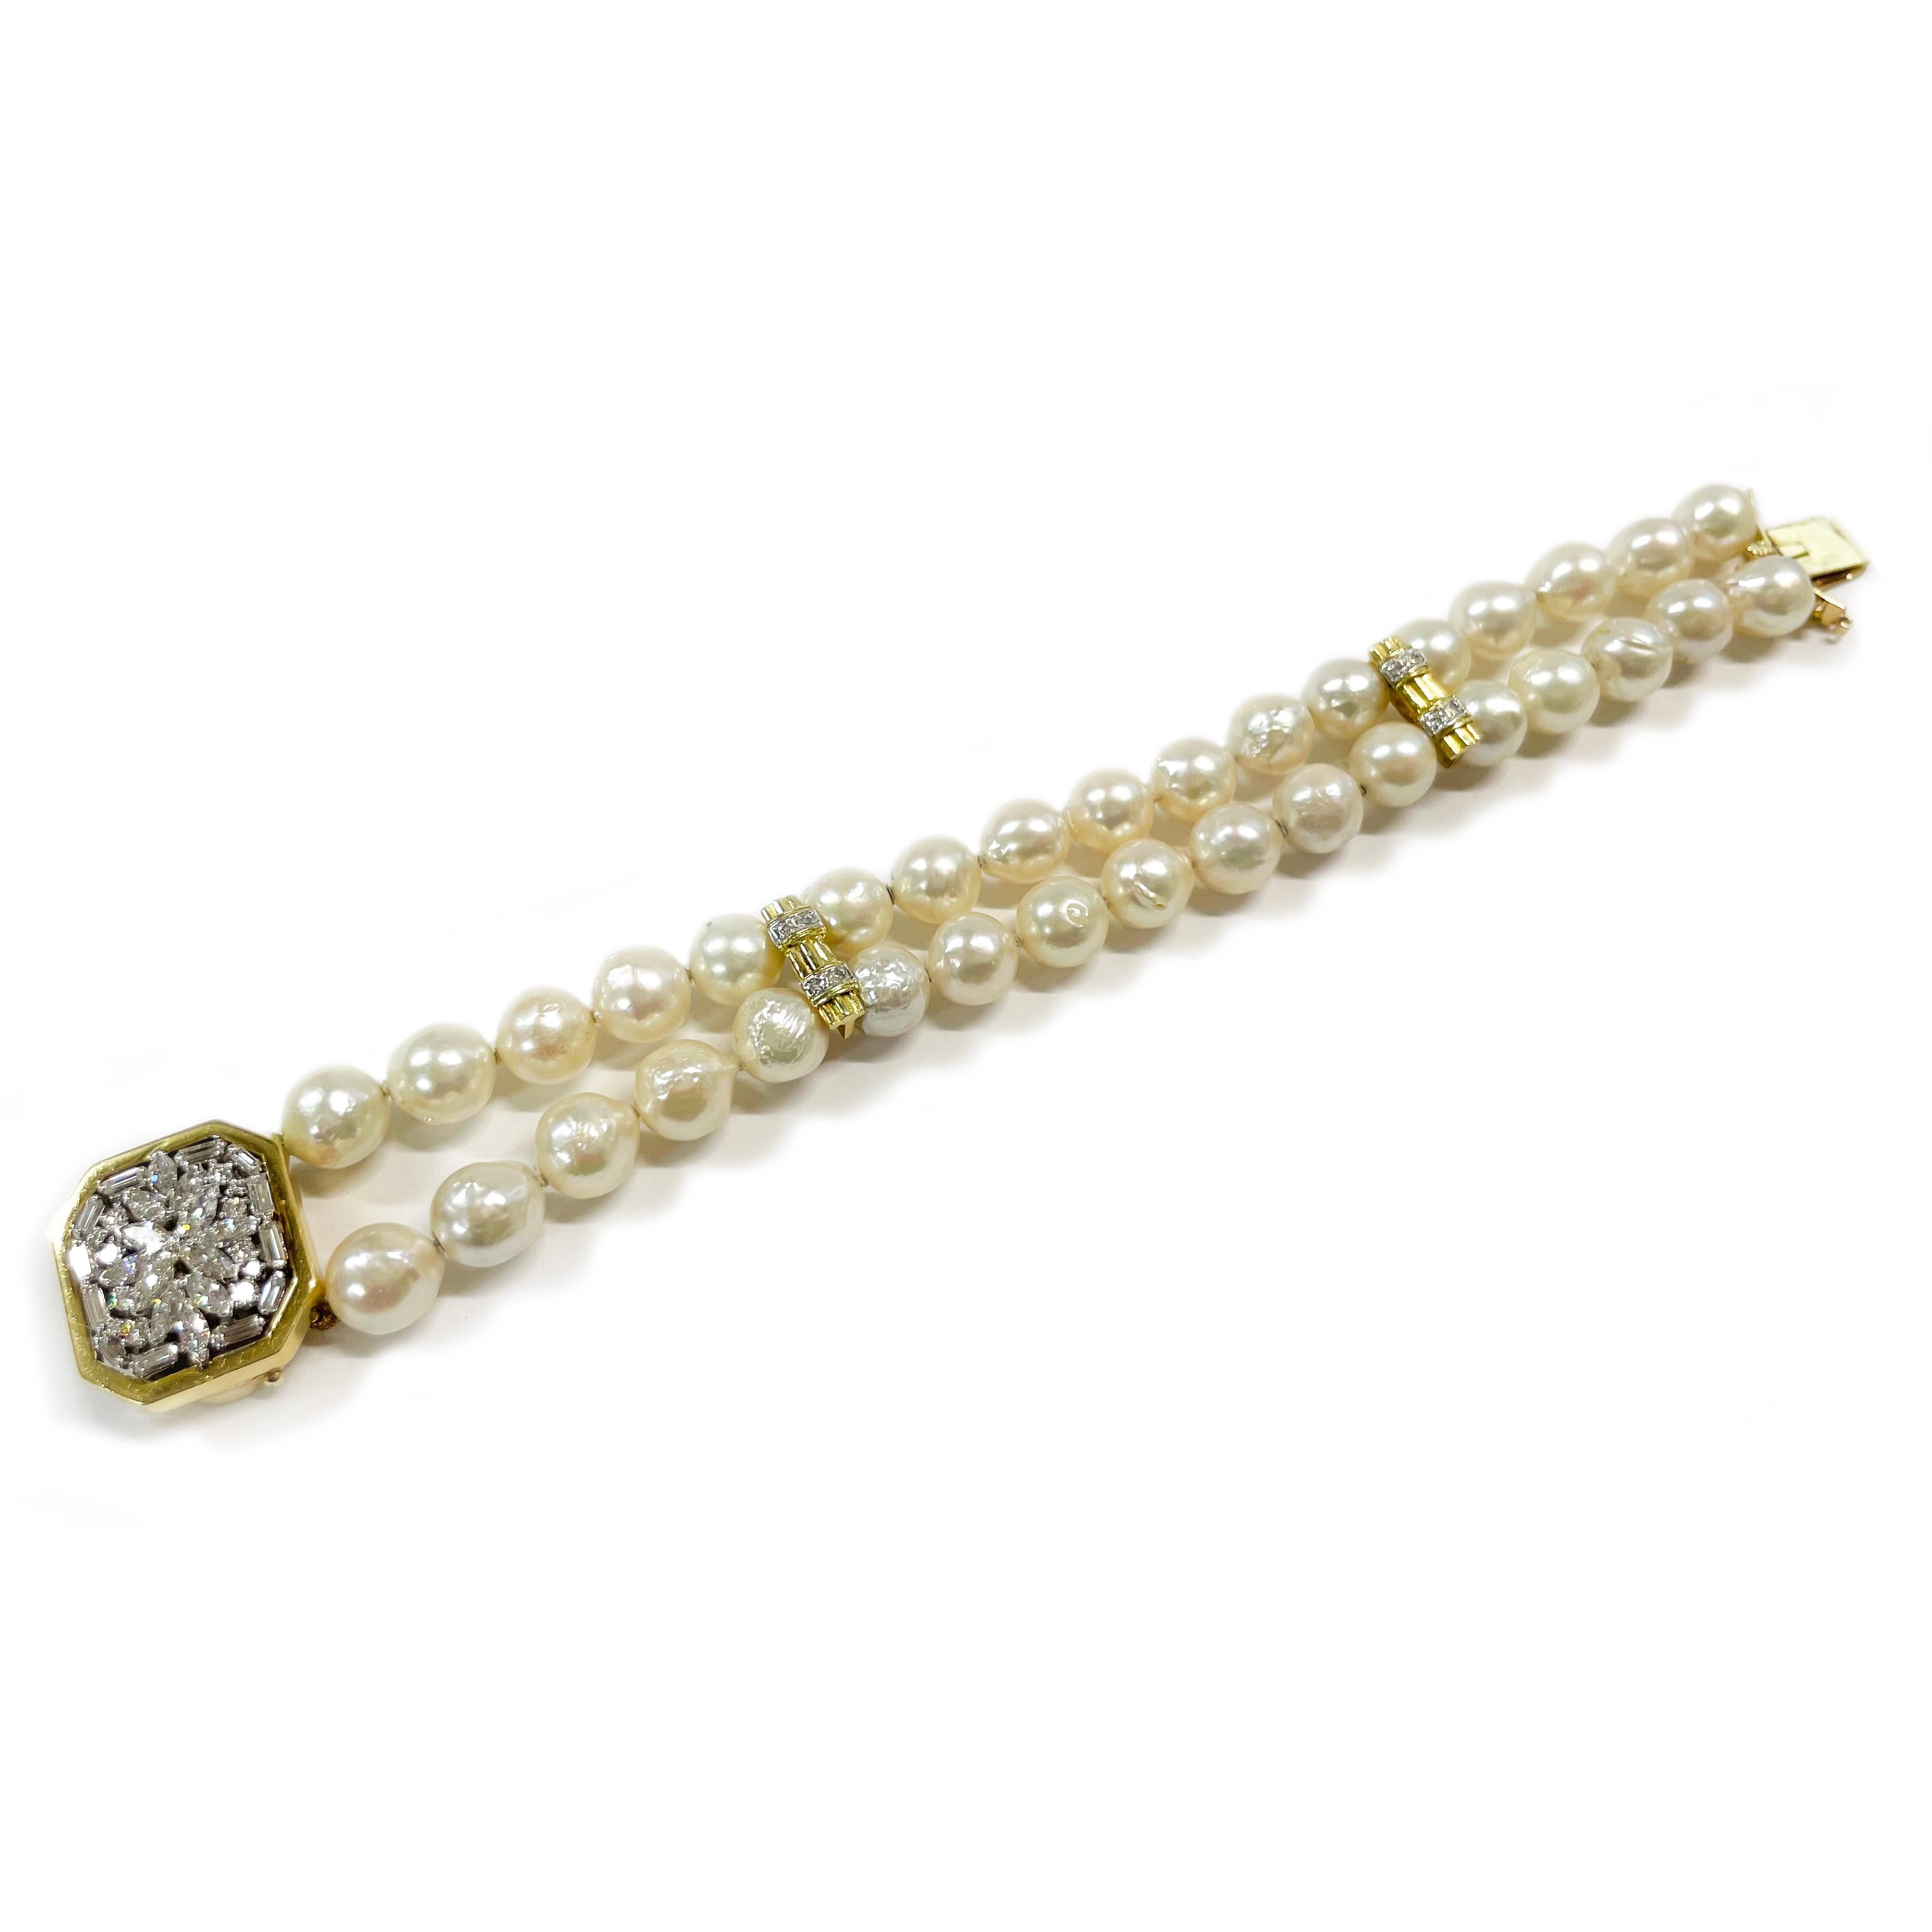 Bracelet en or jaune 14 carats avec perles et diamants. Très beau bracelet de perles de culture baroques à deux brins avec doubles barrettes en or jaune ornées de diamants et d'un fermoir en forme d'octogone incrusté de diamants. Le bracelet